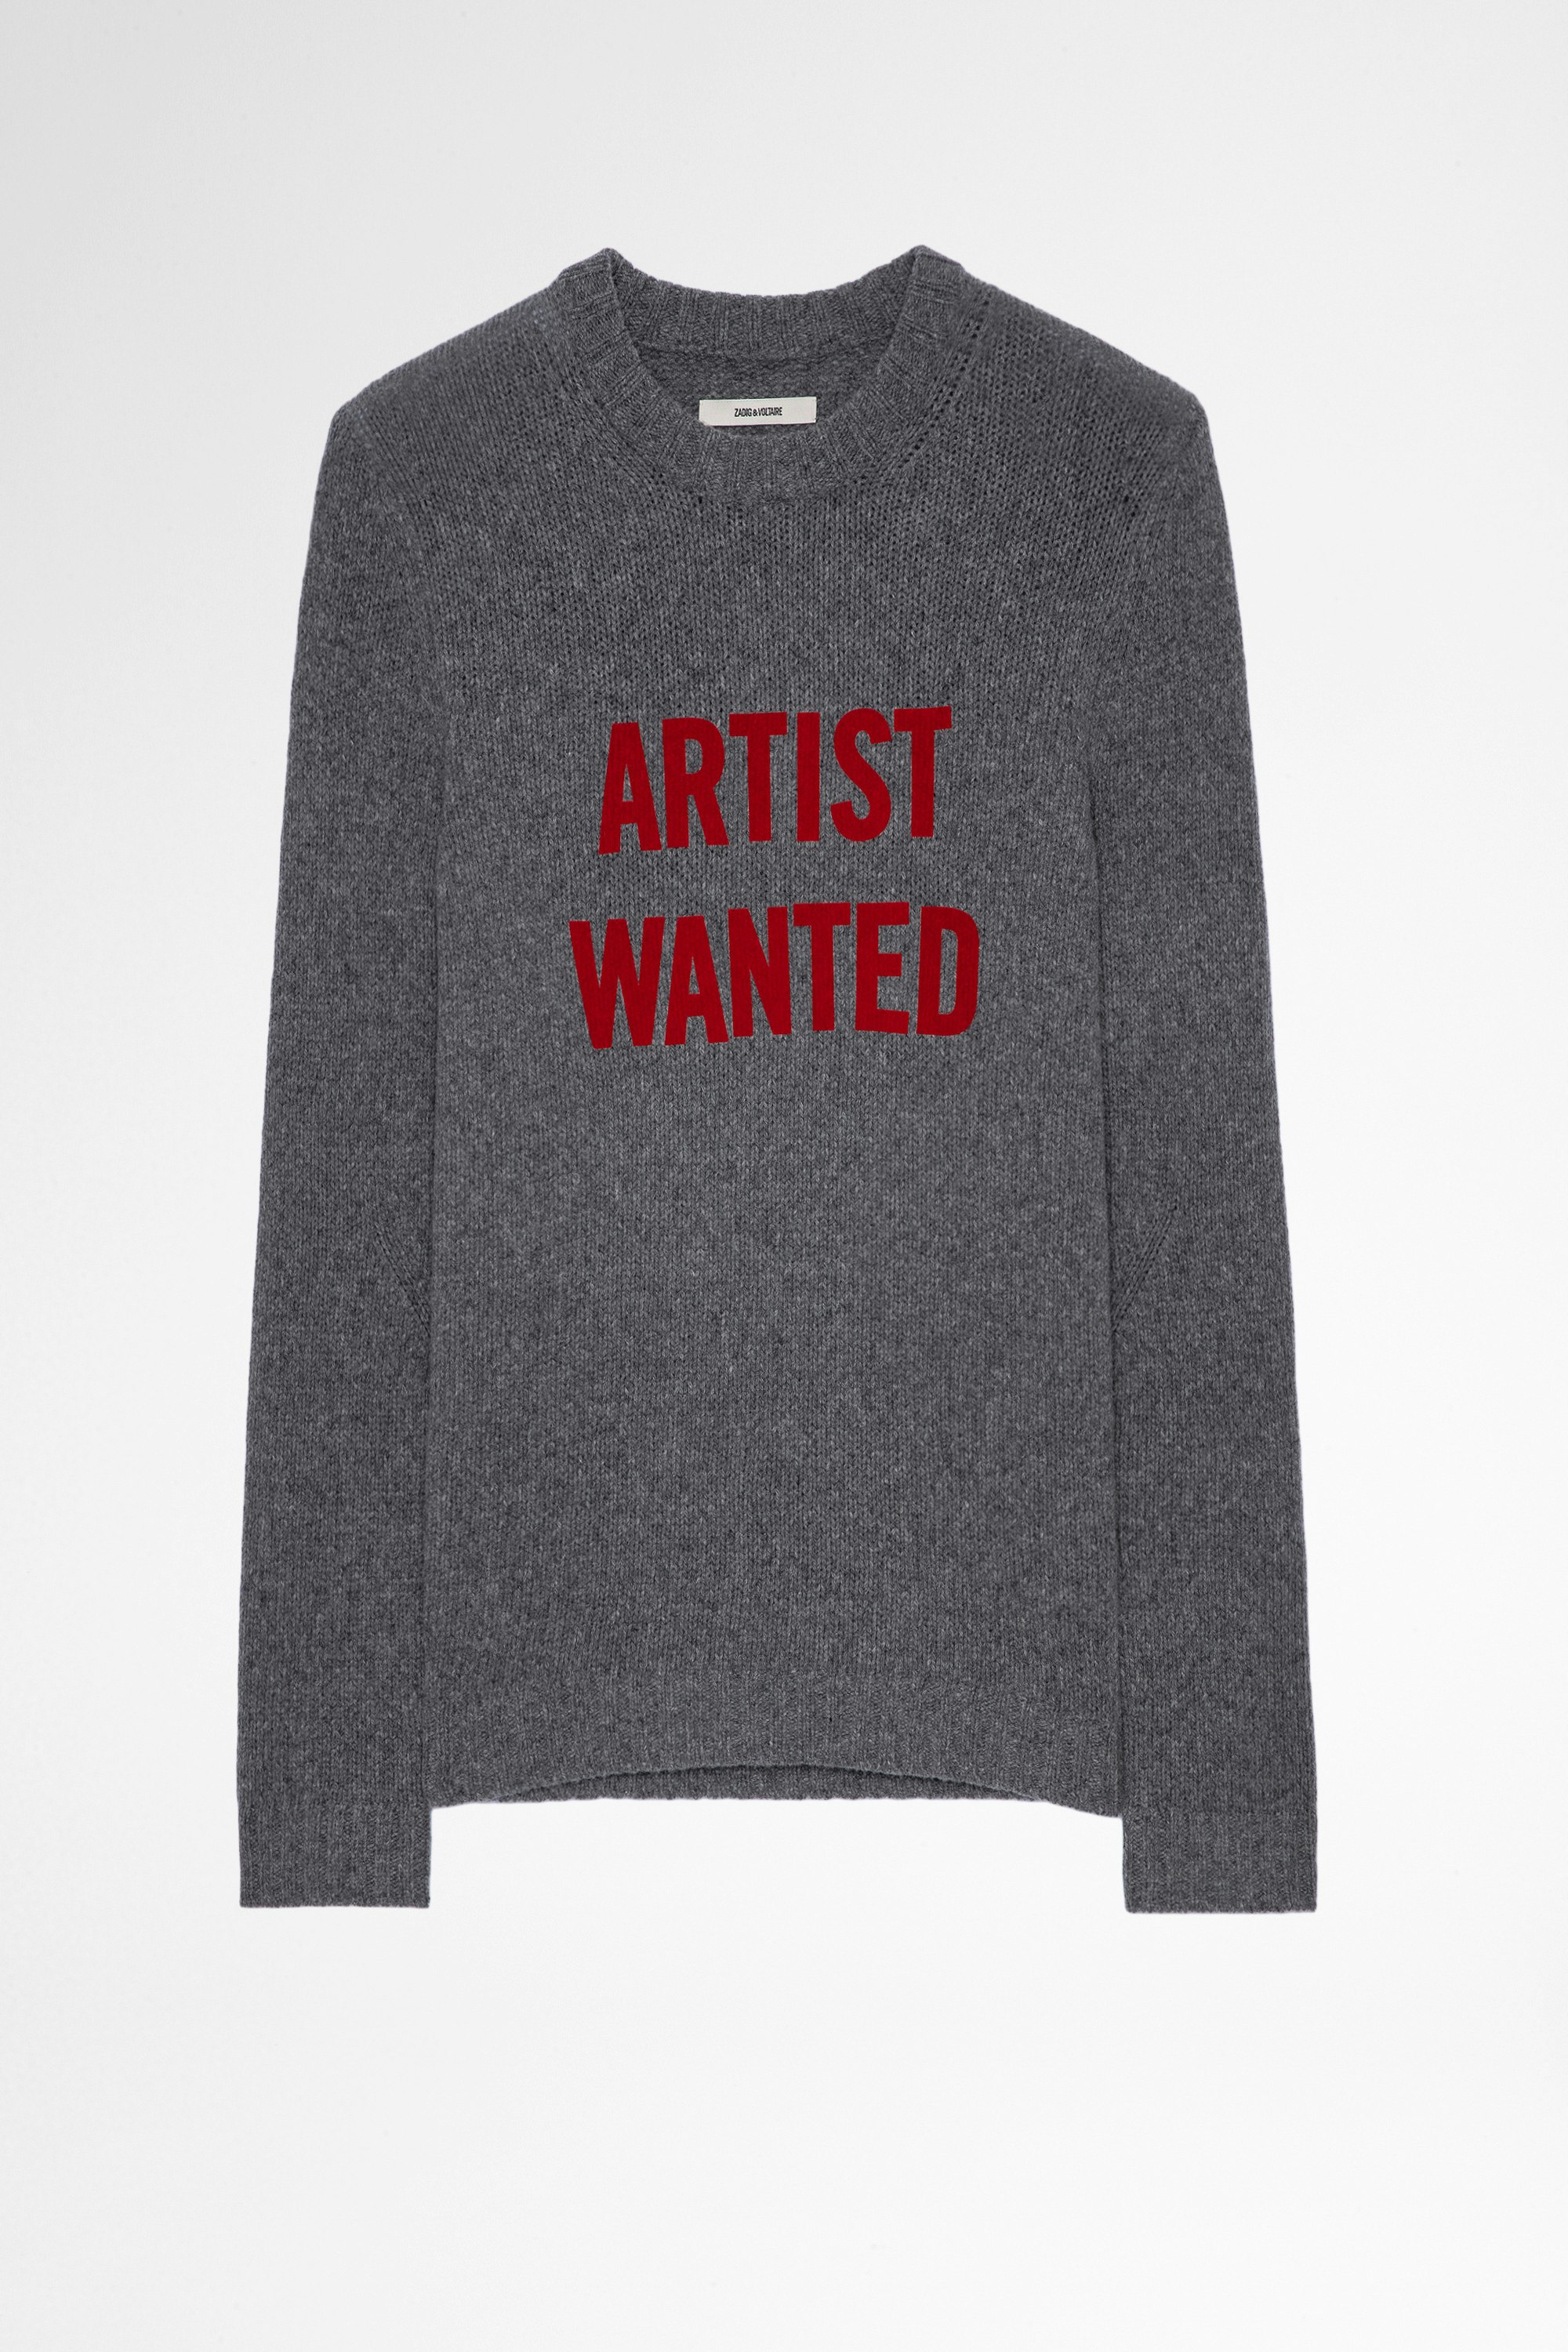 Pullover Kennedy Artist Wanted Herren-Pullover aus grauer Merinowolle Artis Wanted